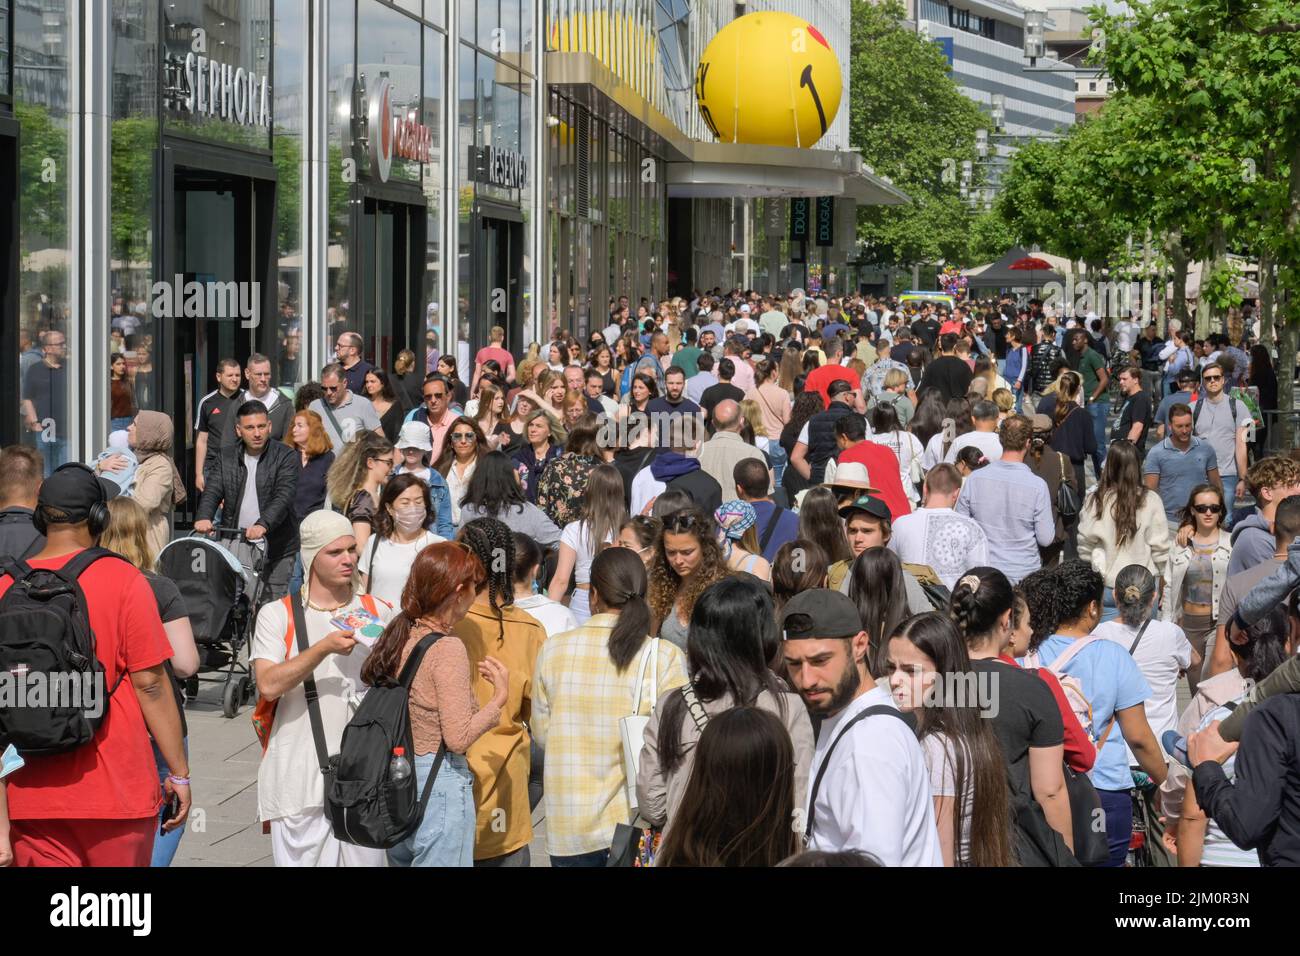 Menschenmenge, Passanten, Einkaufsstraße, Zeil, Frankfurt am Main, Hessen, Deutschland Stock Photo